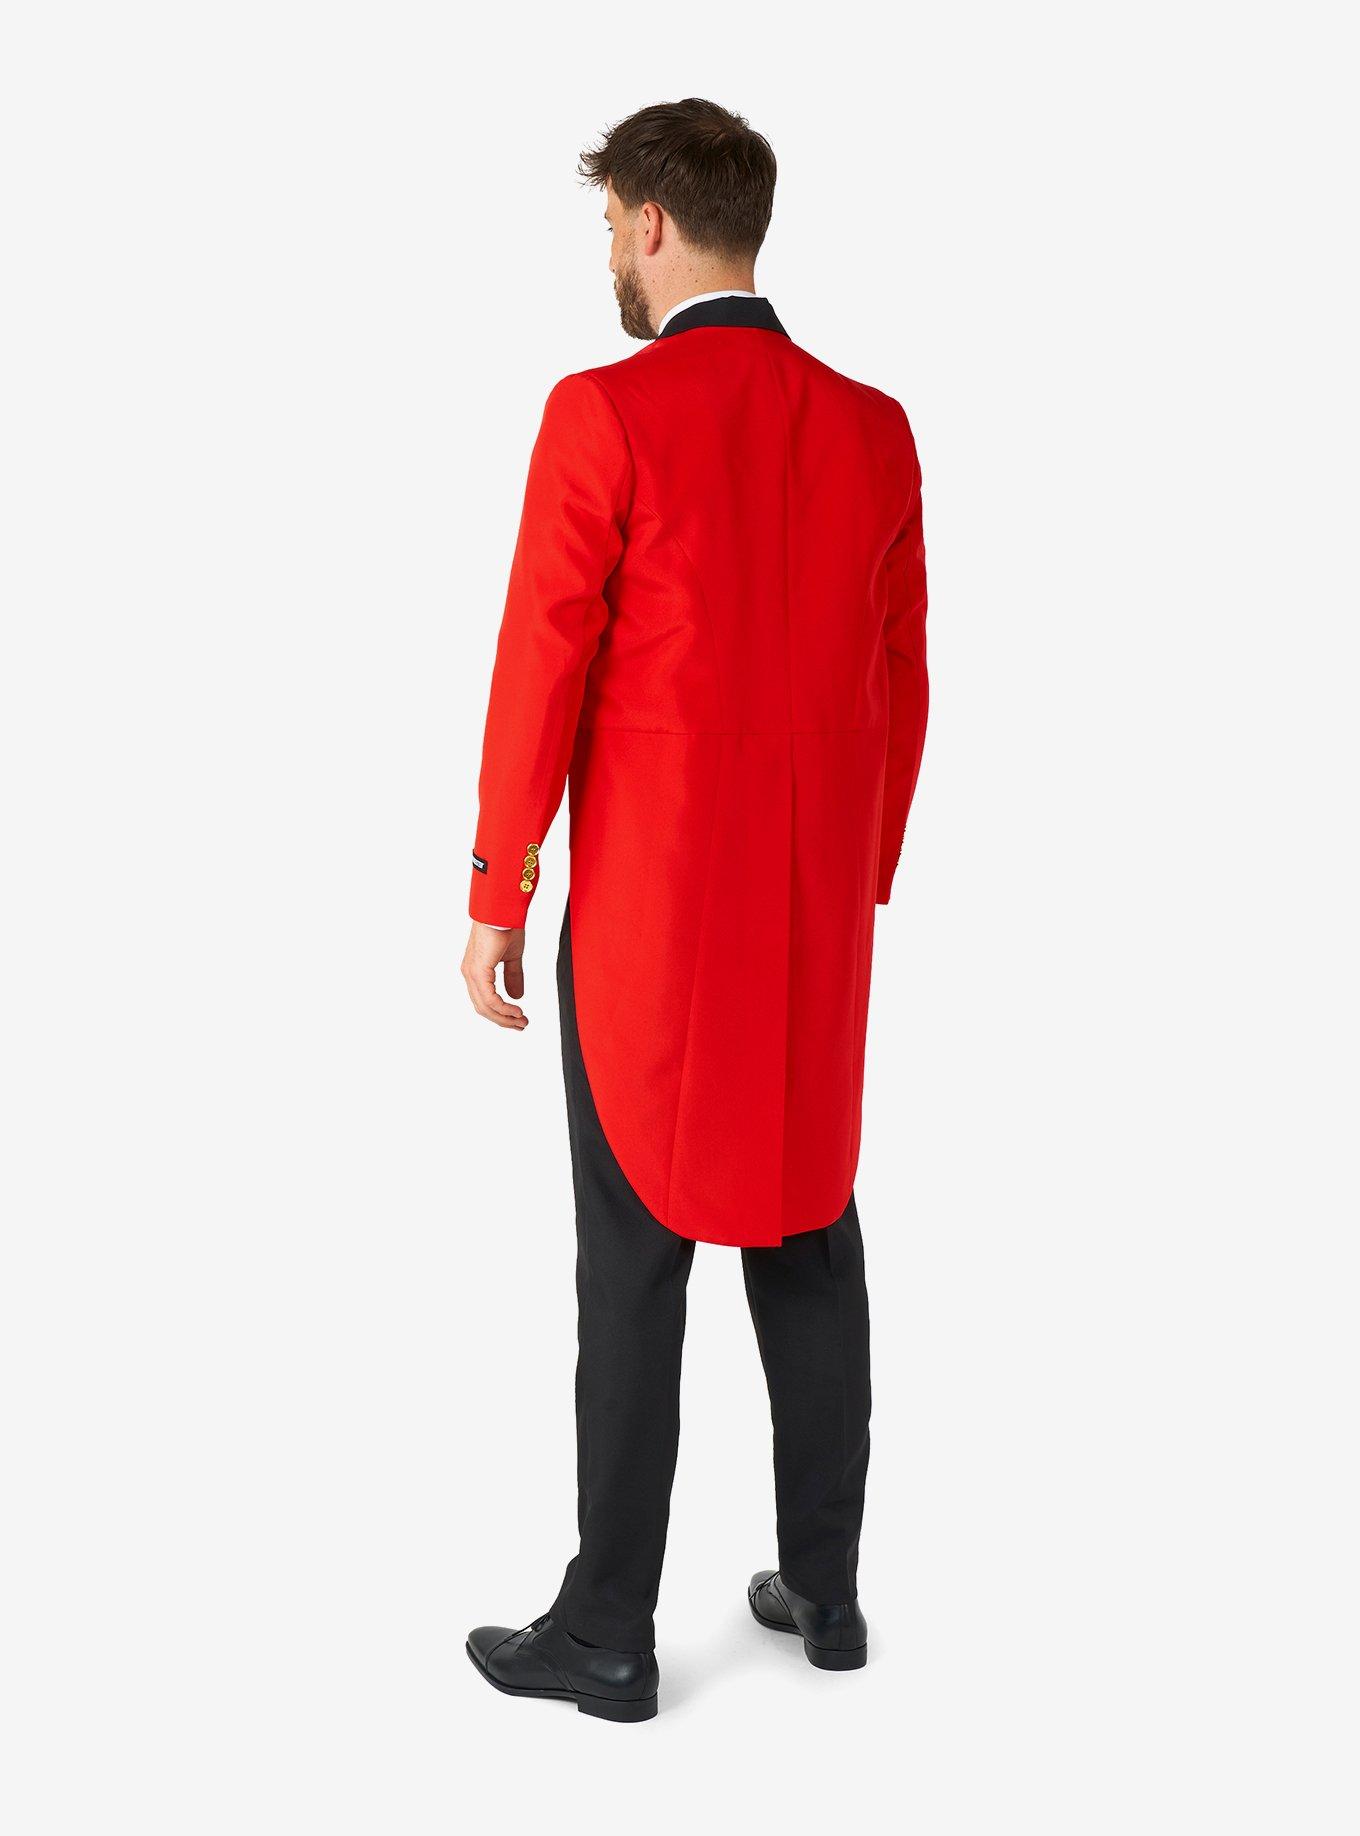 Circus Tailcoat Suit Red Tuxedo Costume, RED, alternate